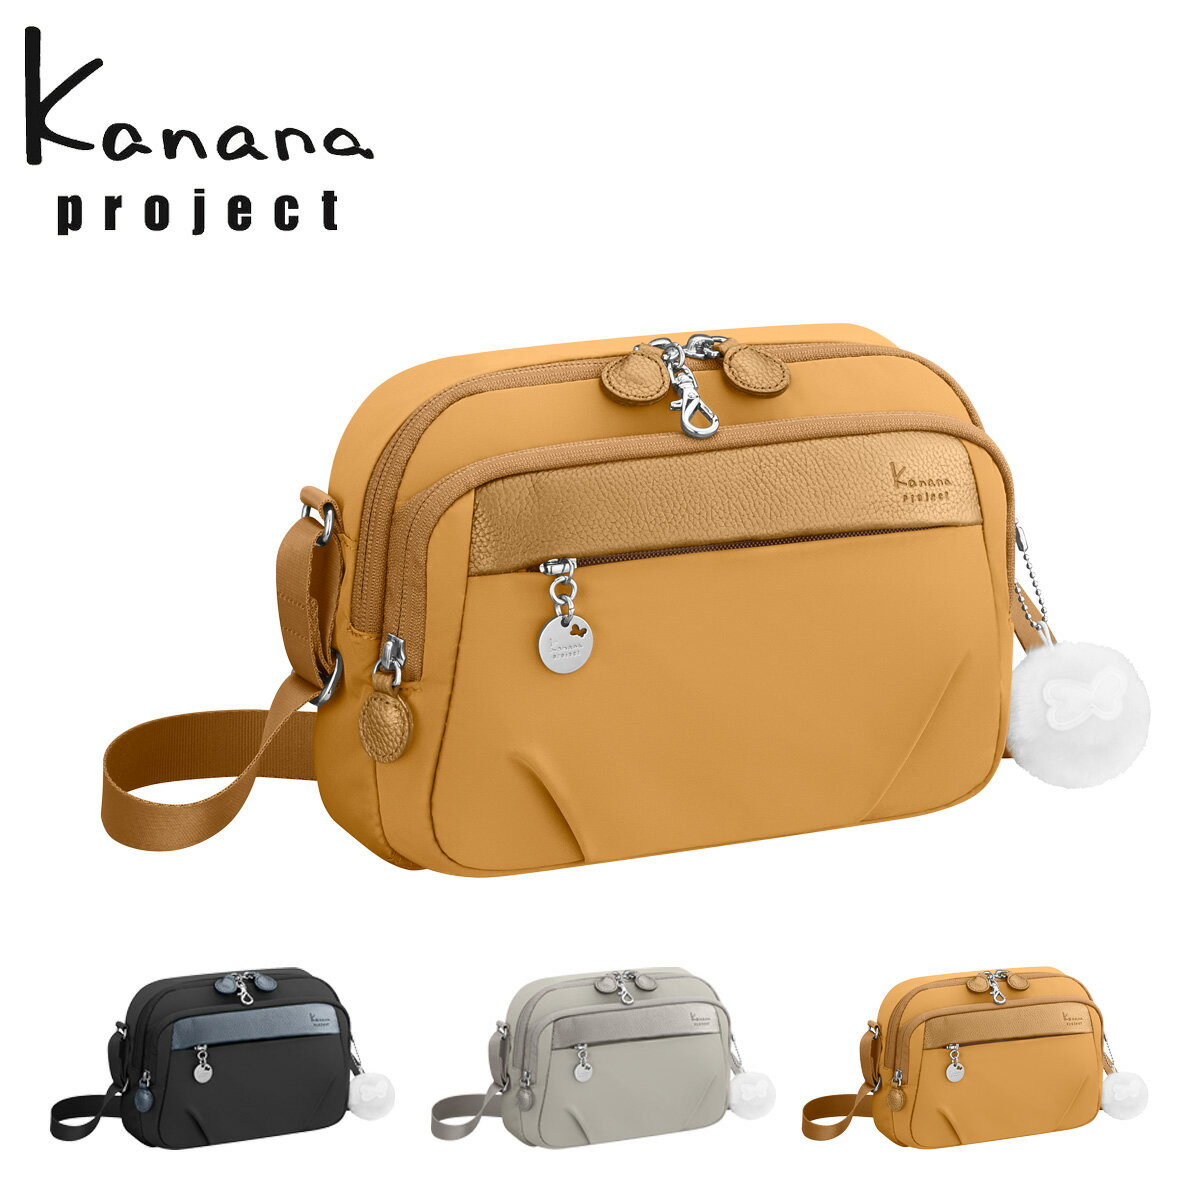 カナナ カナナプロジェクト ショルダーバッグ 軽量 レディース 67641 PJ1-4th Kanana project[DL10]